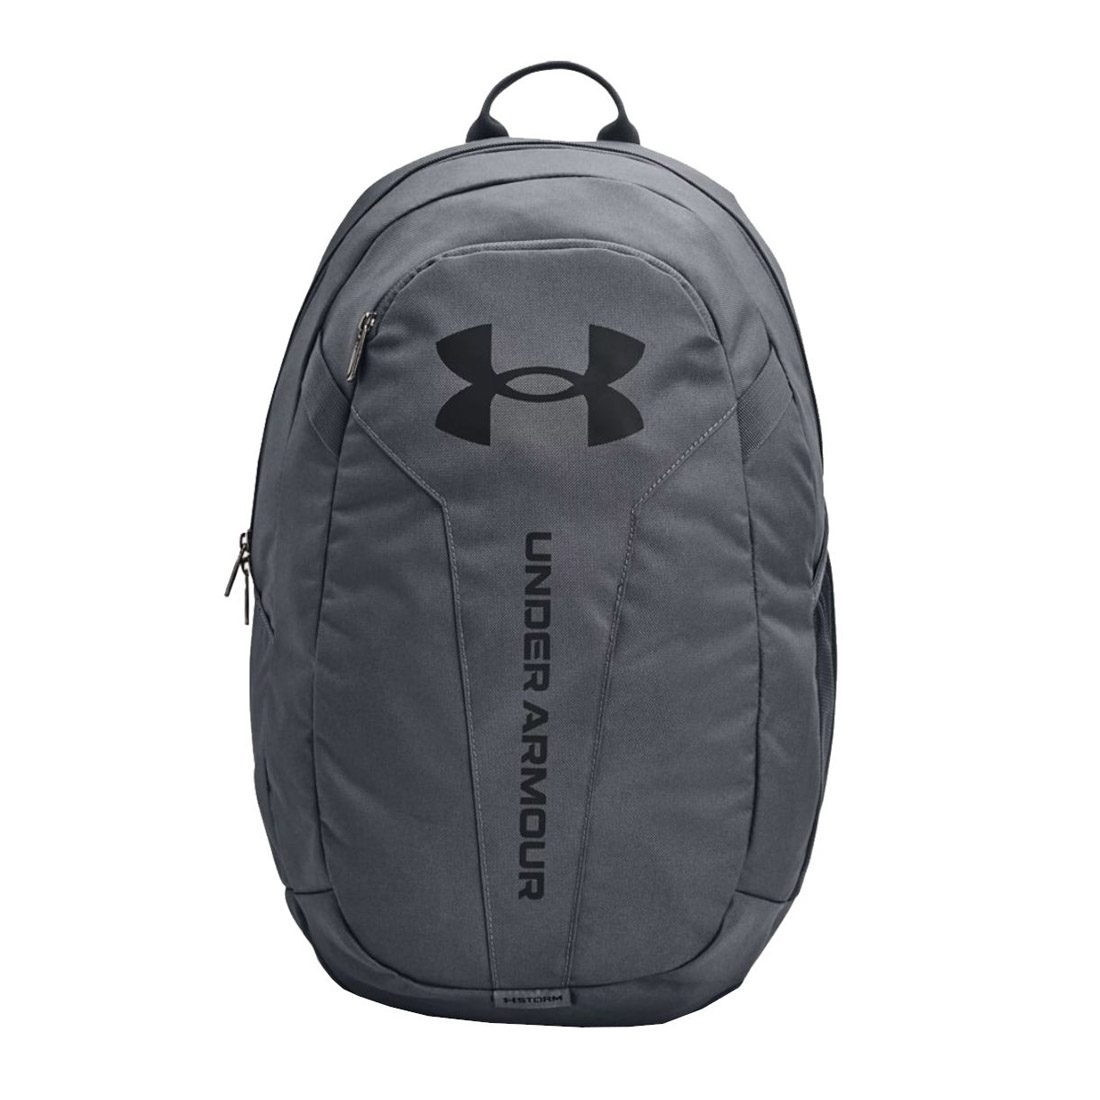 Under Armour Hustle Light Backpack Rucksack School Sports Bag Grey/Black - image 1 of 2